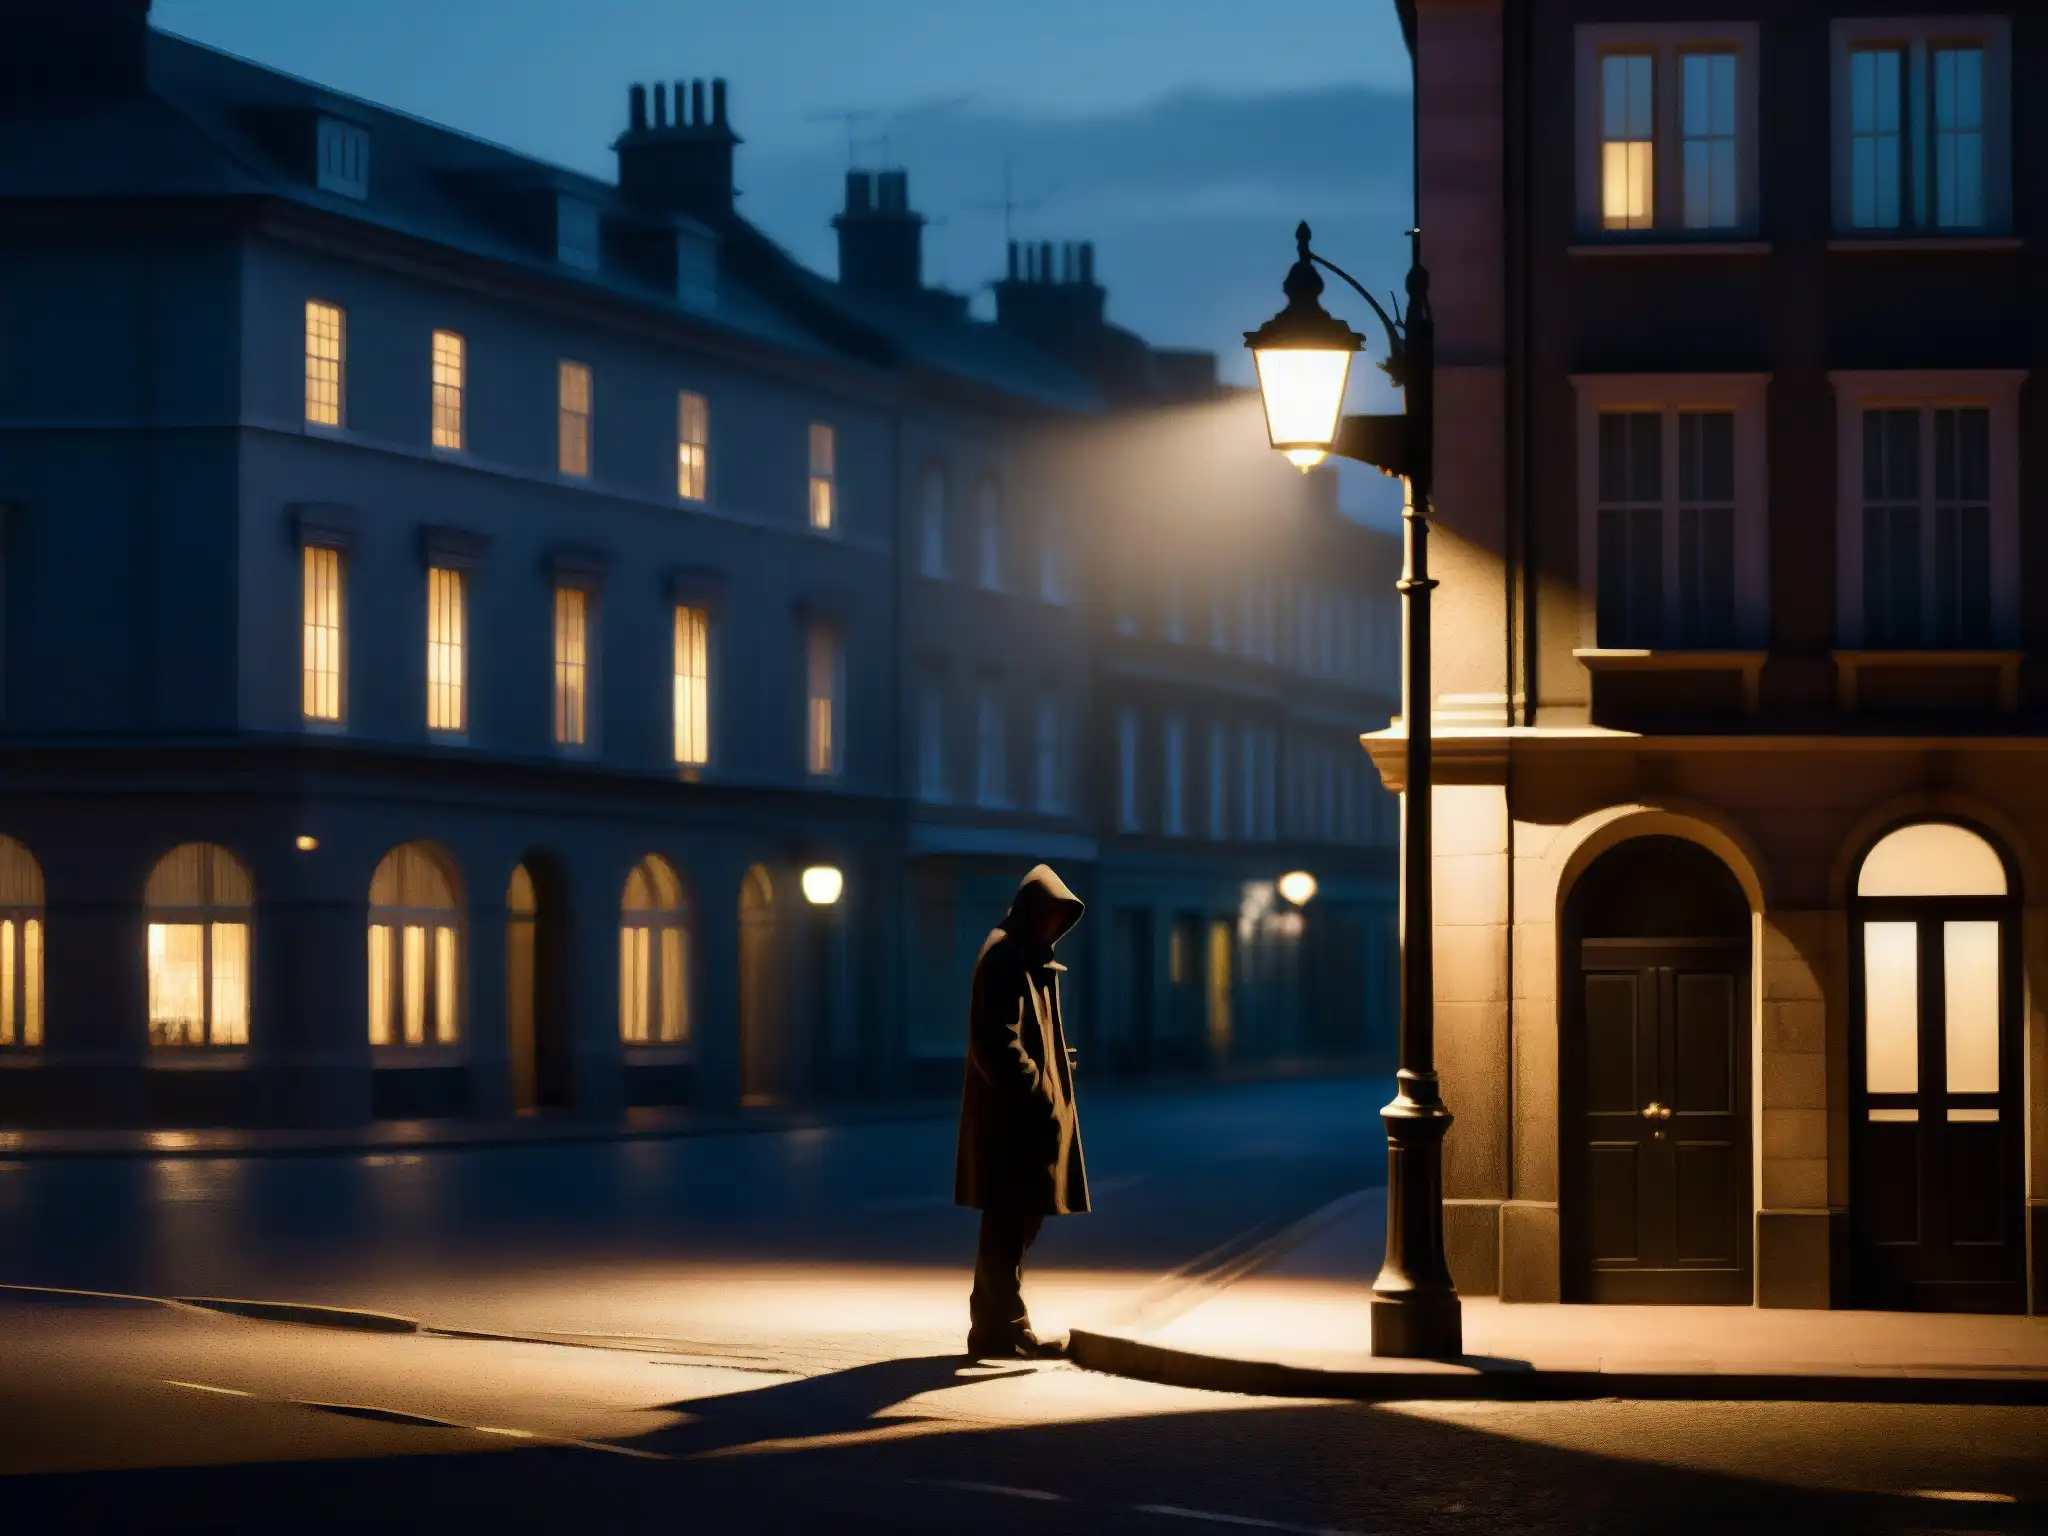 Un rincón oscuro de la calle por la noche, con una figura solitaria bajo la luz parpadeante de una farola